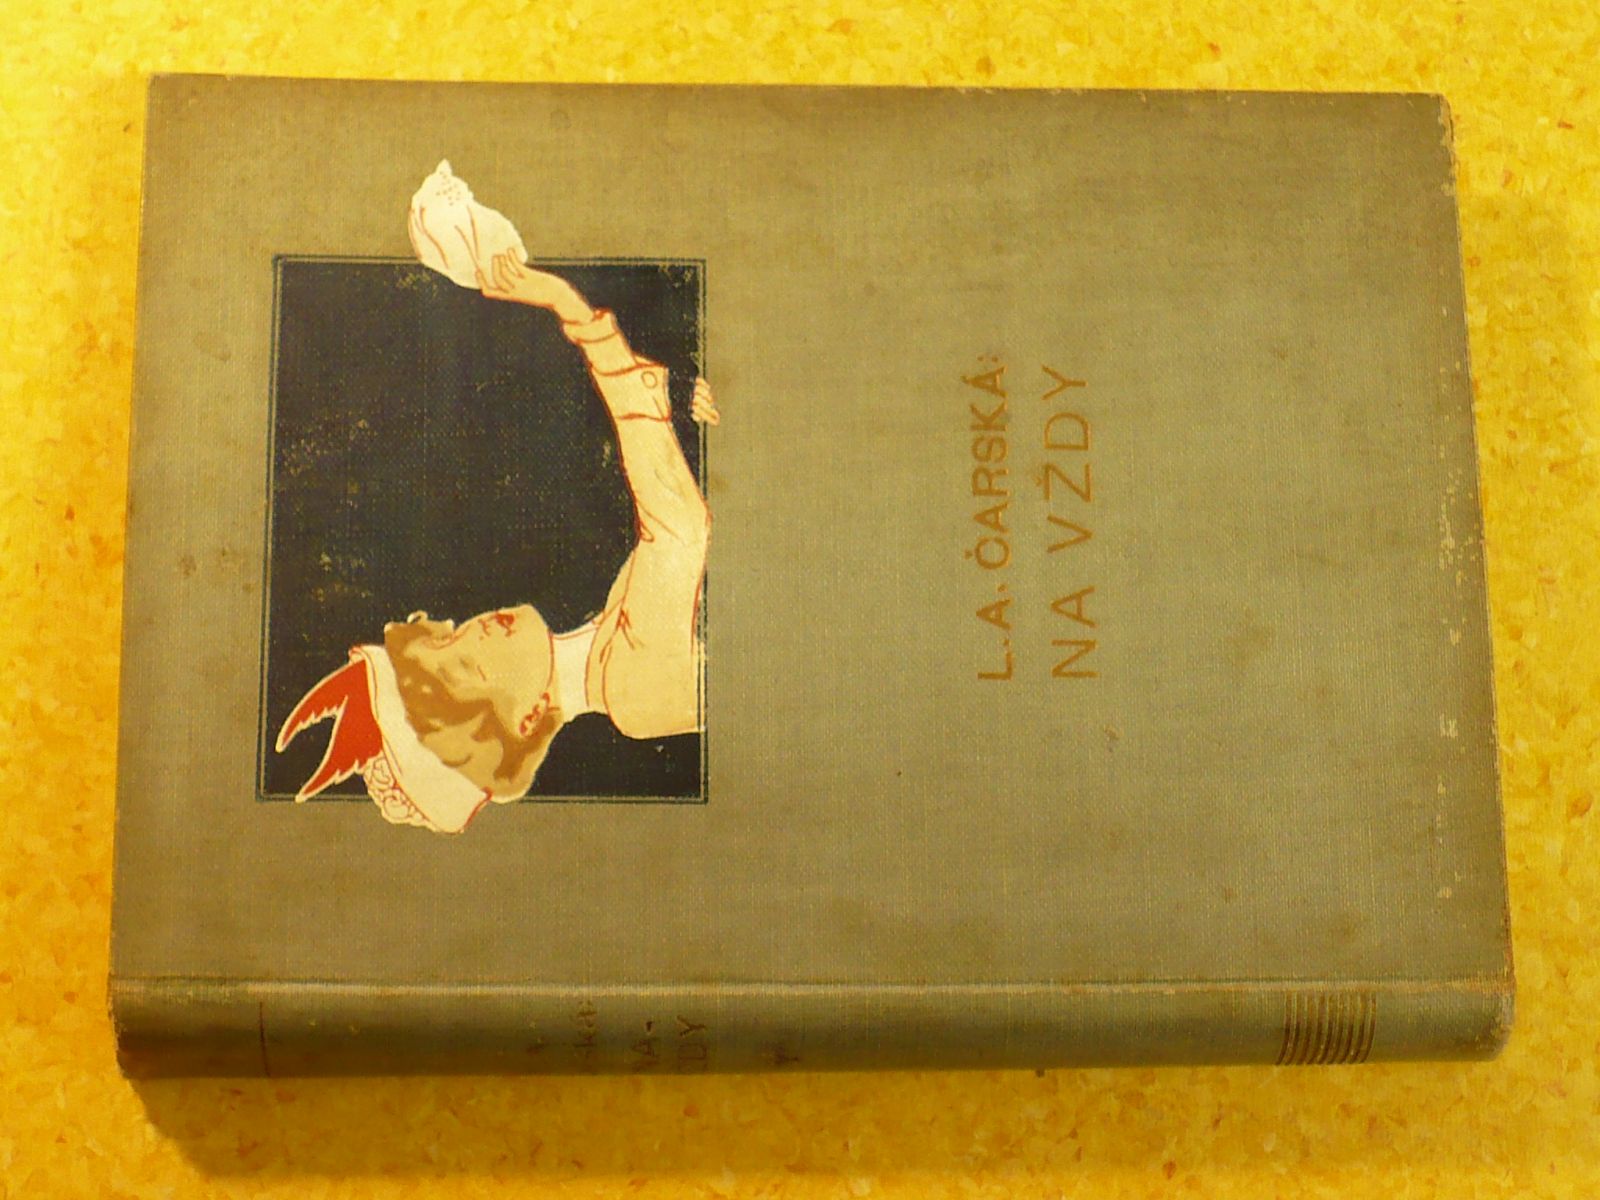 L.A. Čarská - Na vždy (1923)